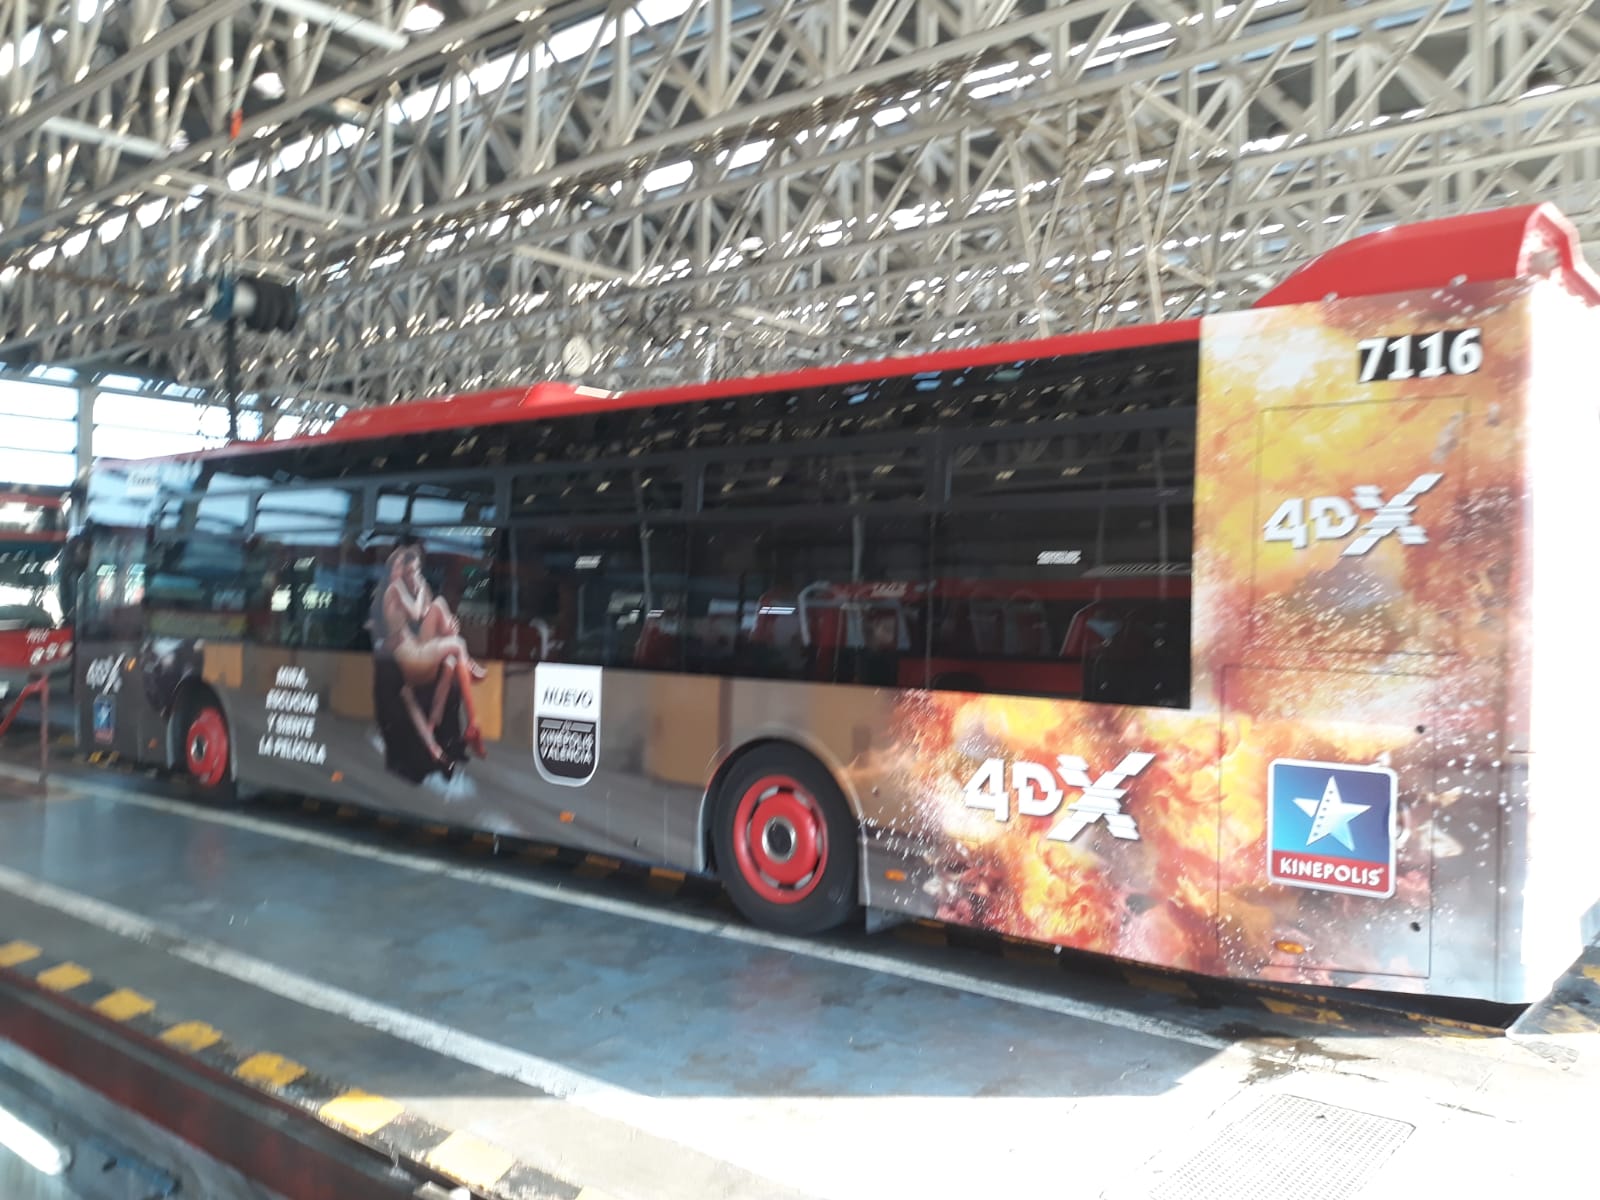 Fotografía publicidad campaña "Kinepolis" en autobús semiintegral